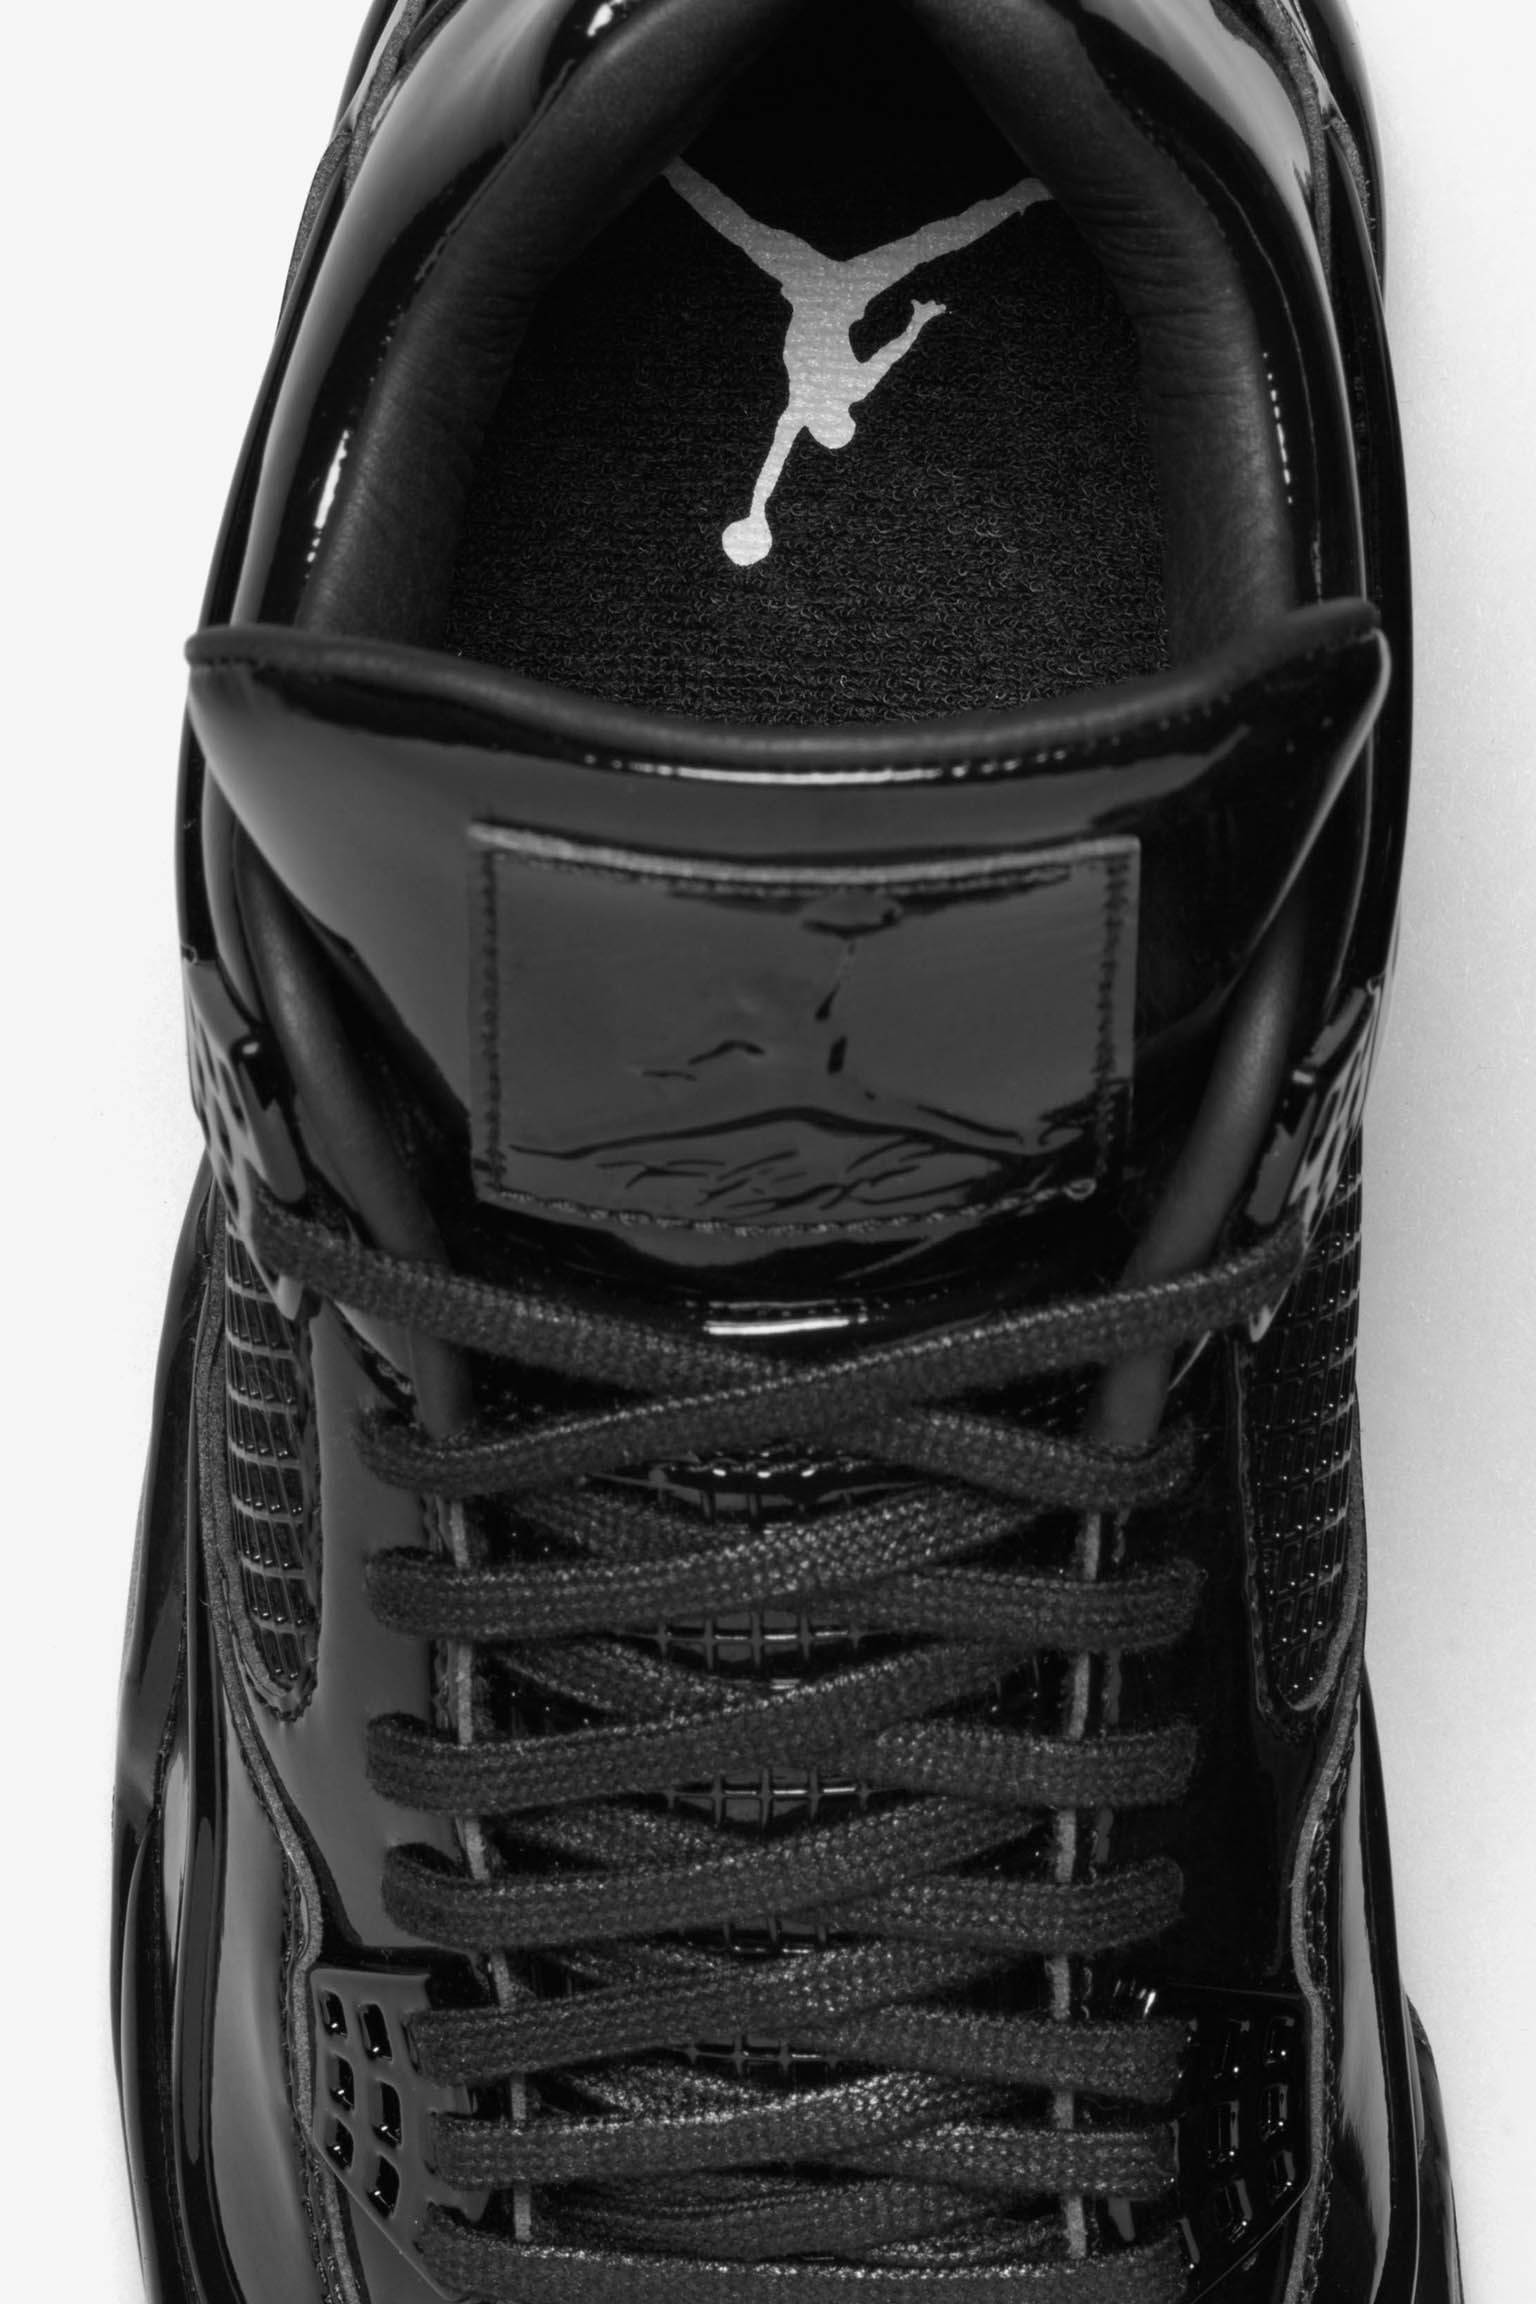 Air Jordan 11LAB4 'Black Patent' Release Date. Nike SNKRS